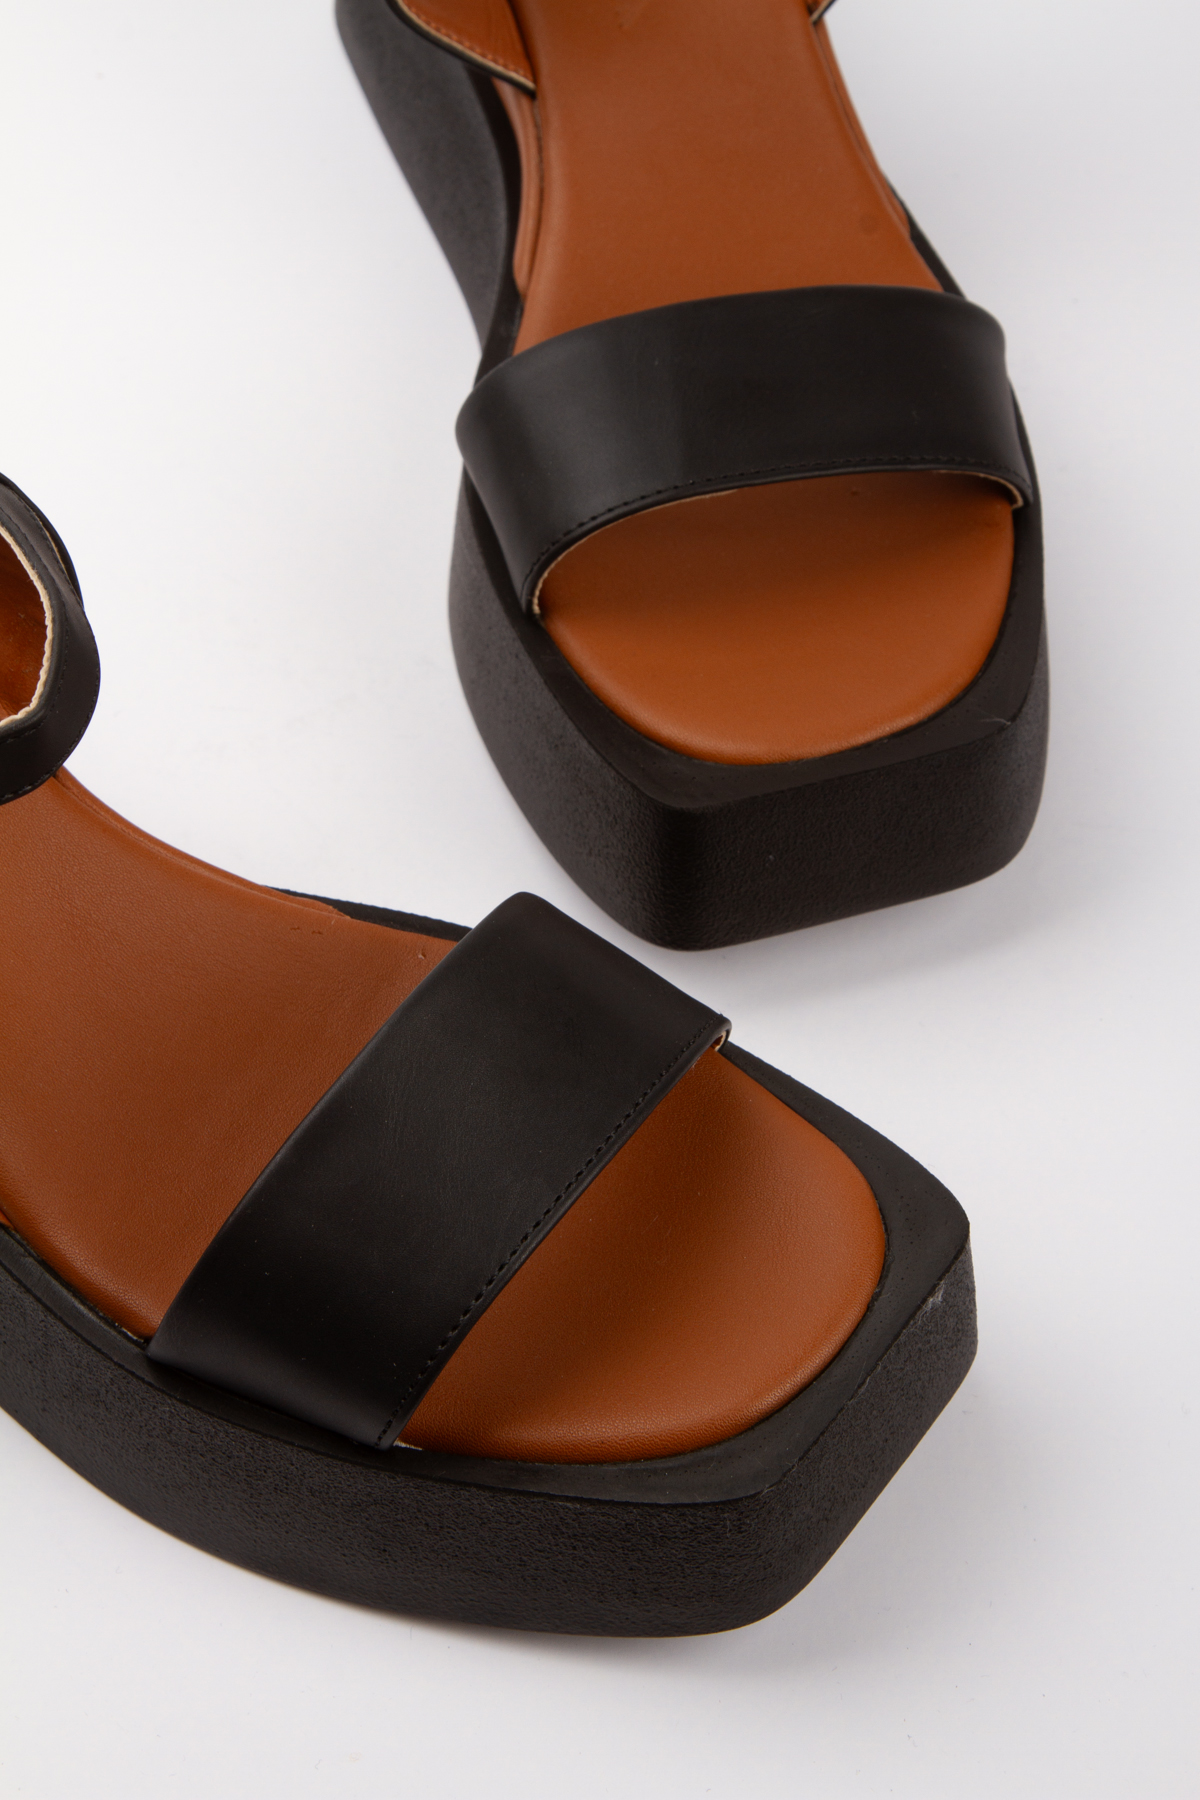 Kadın Özel Üretim Kalın Tabanlı Sandalet Siyah